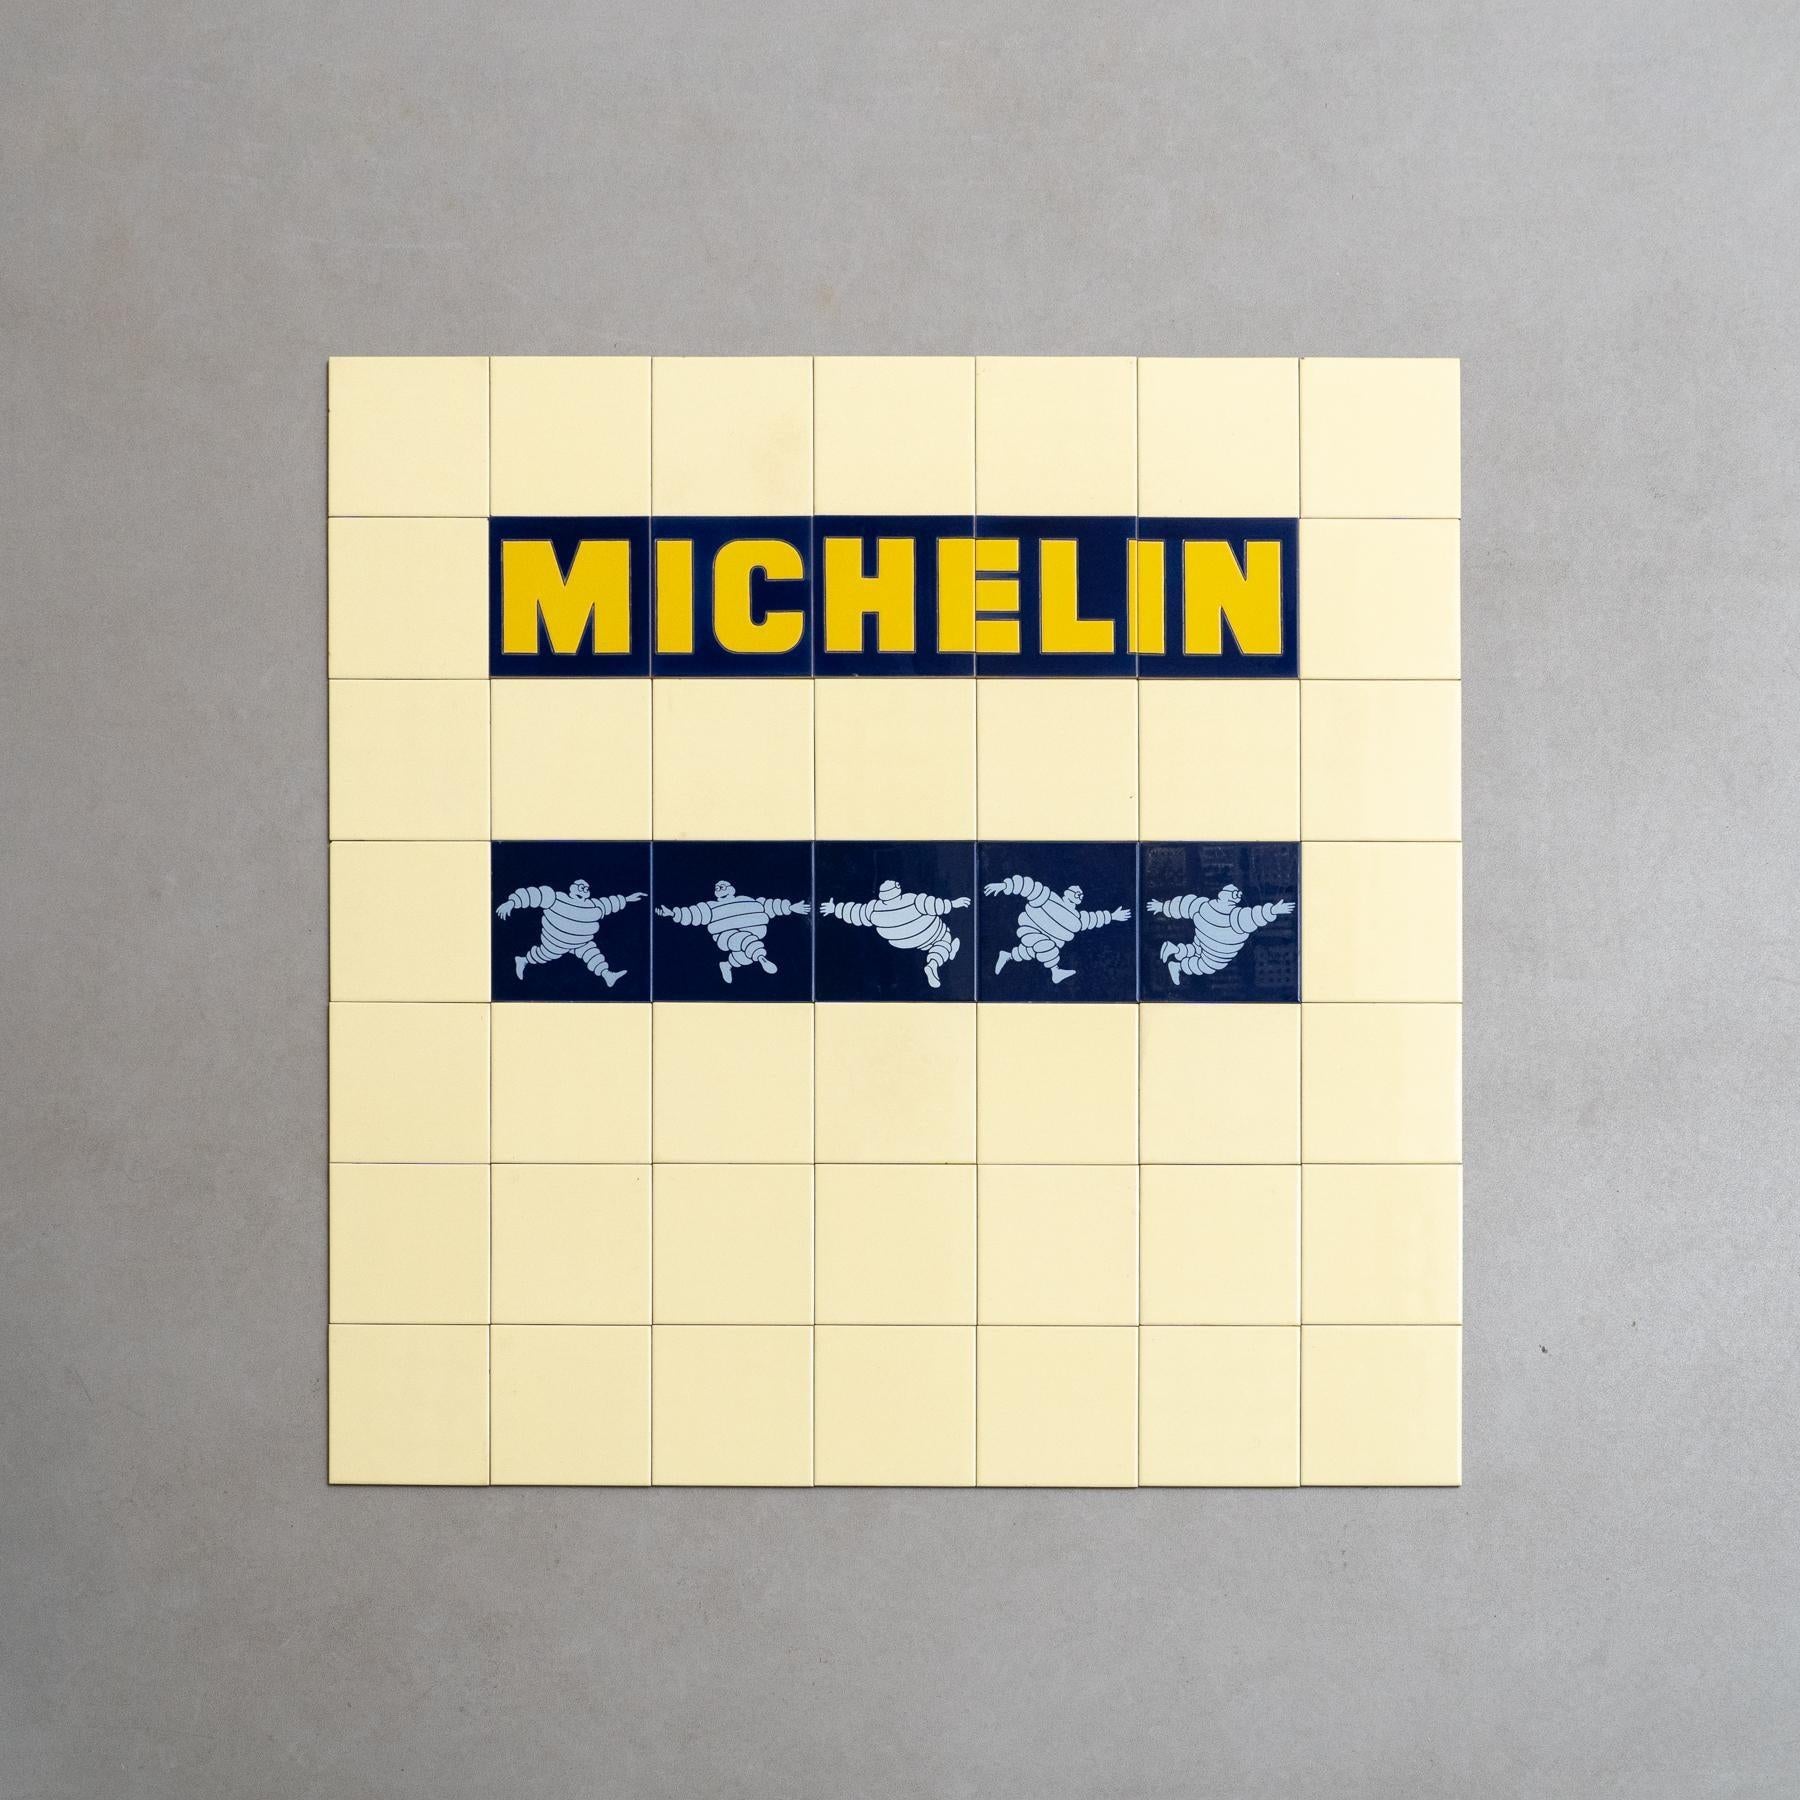 Tauchen Sie ein in eine nostalgische Reise mit diesem seltenen und einzigartigen großen Satz von Michelin-Männchen-Fliesen, die von einem unbekannten Hersteller um 1960 in Spanien hergestellt wurden. Das Set besteht aus der kompletten Serie von 5